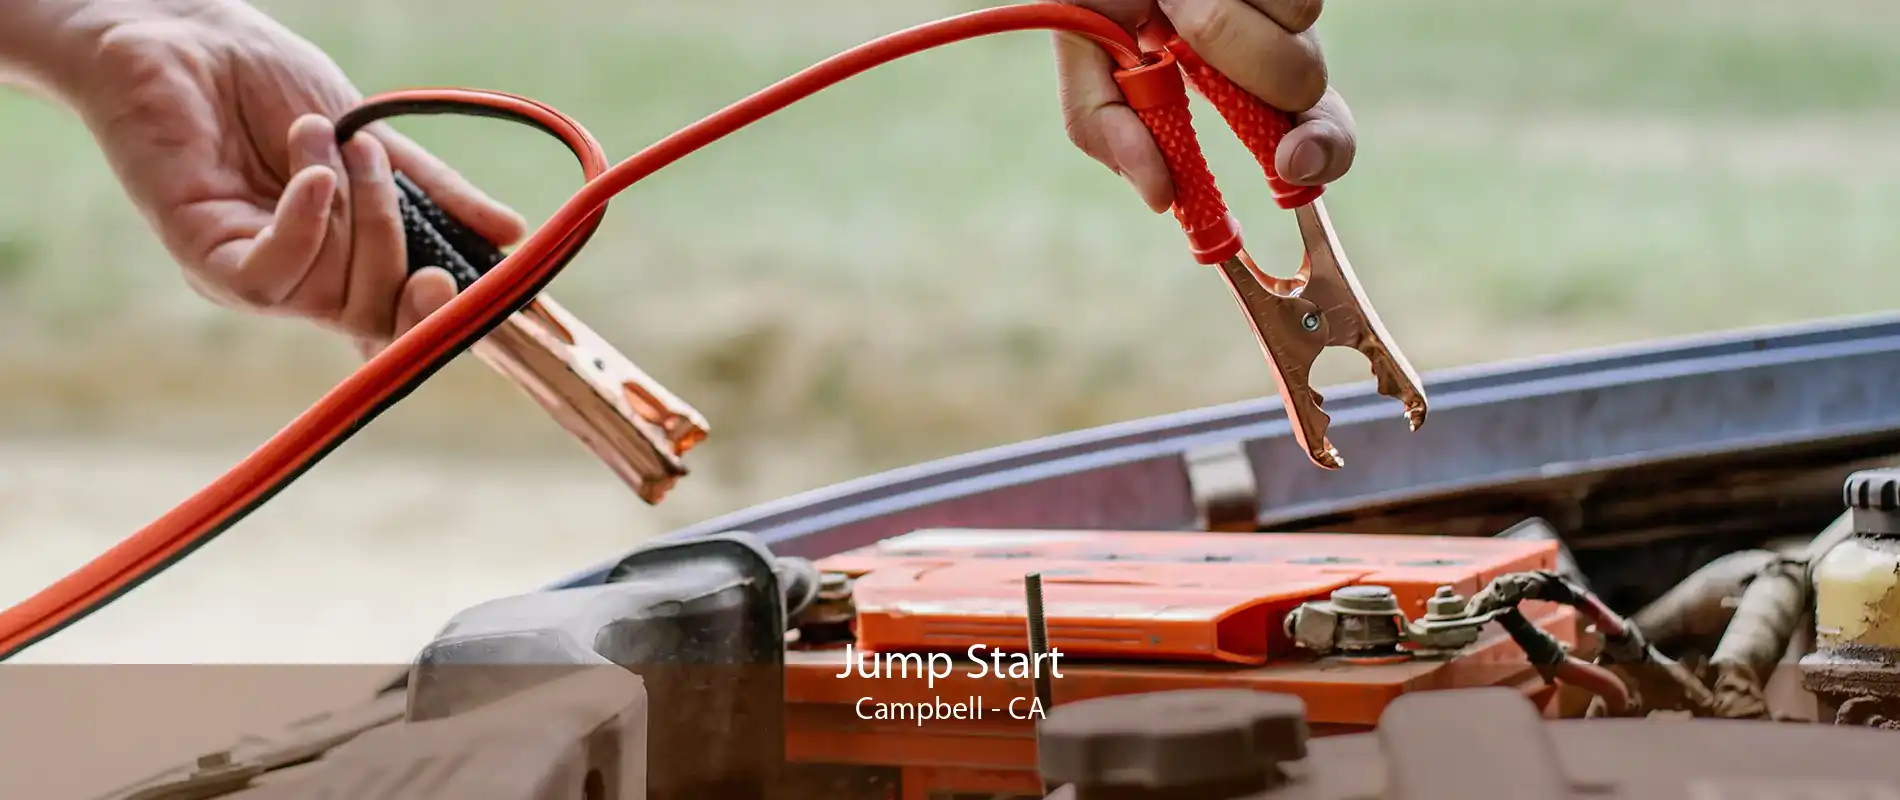 Jump Start Campbell - CA